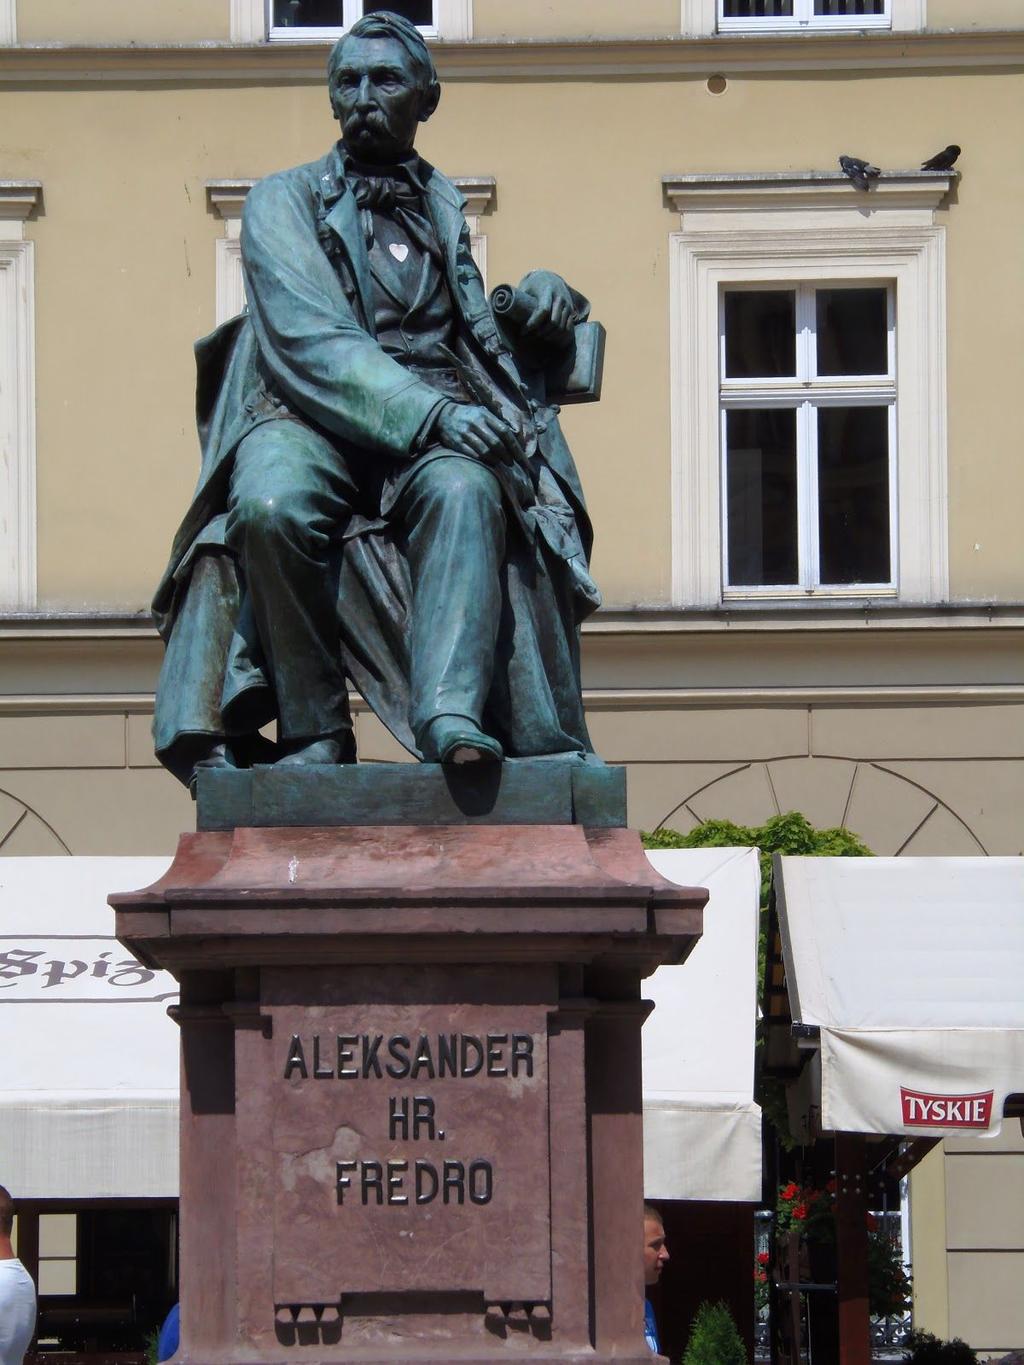 Pomnik. To jest pomnik we Wrocławiu. Aleksander Fredro to Polak ze Lwowa.